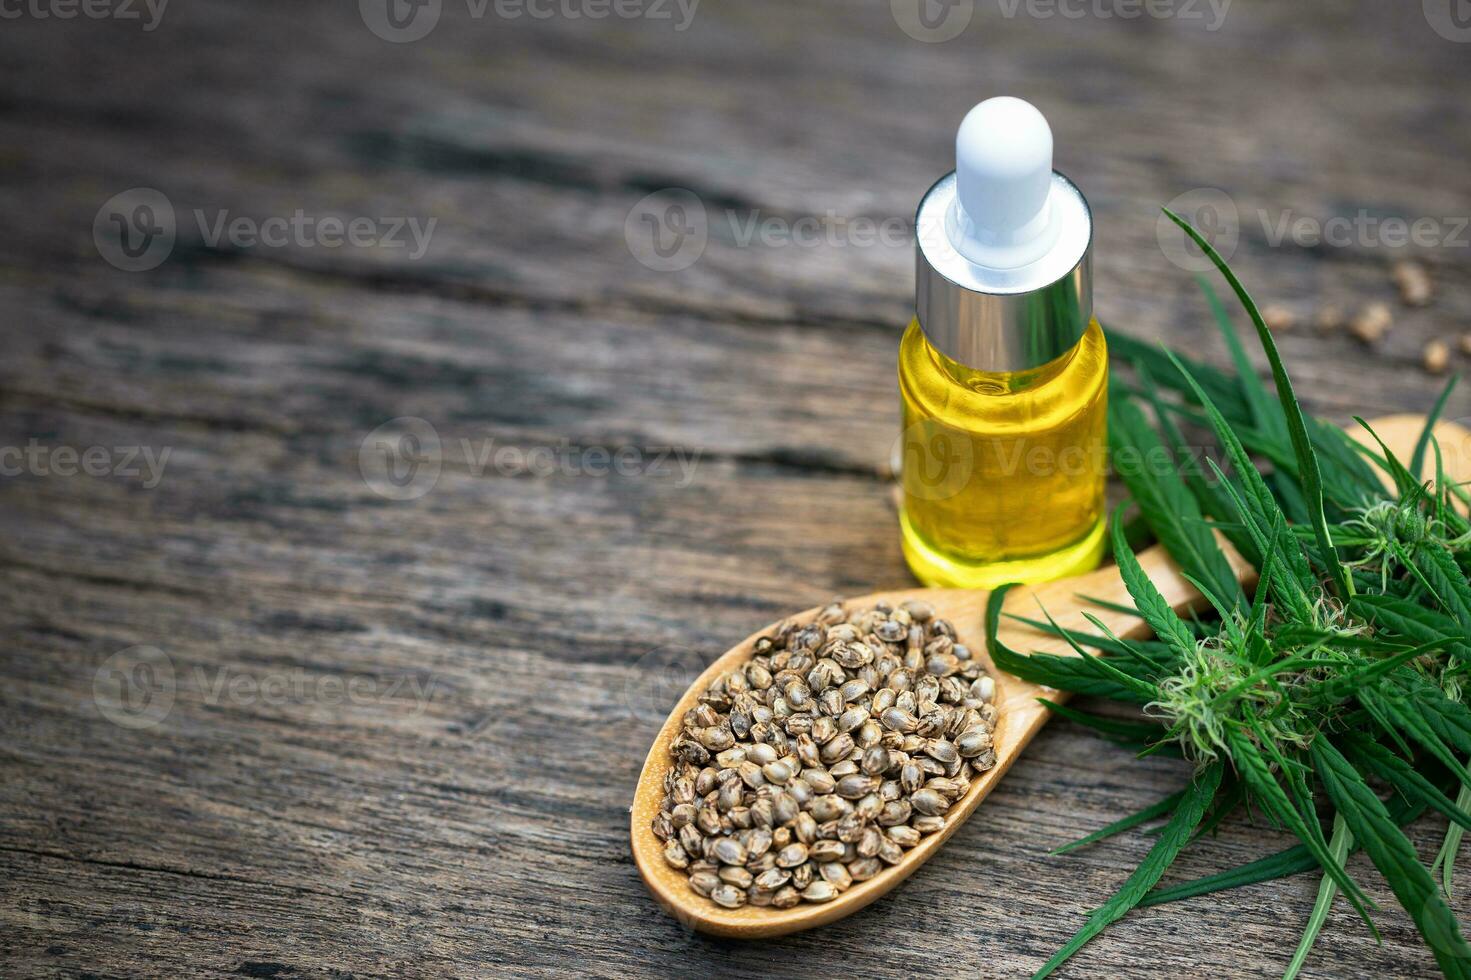 óleo de cânhamo na garrafa e sementes de cânhamo, óleo de cannabis - conceito de maconha medicinal. foto